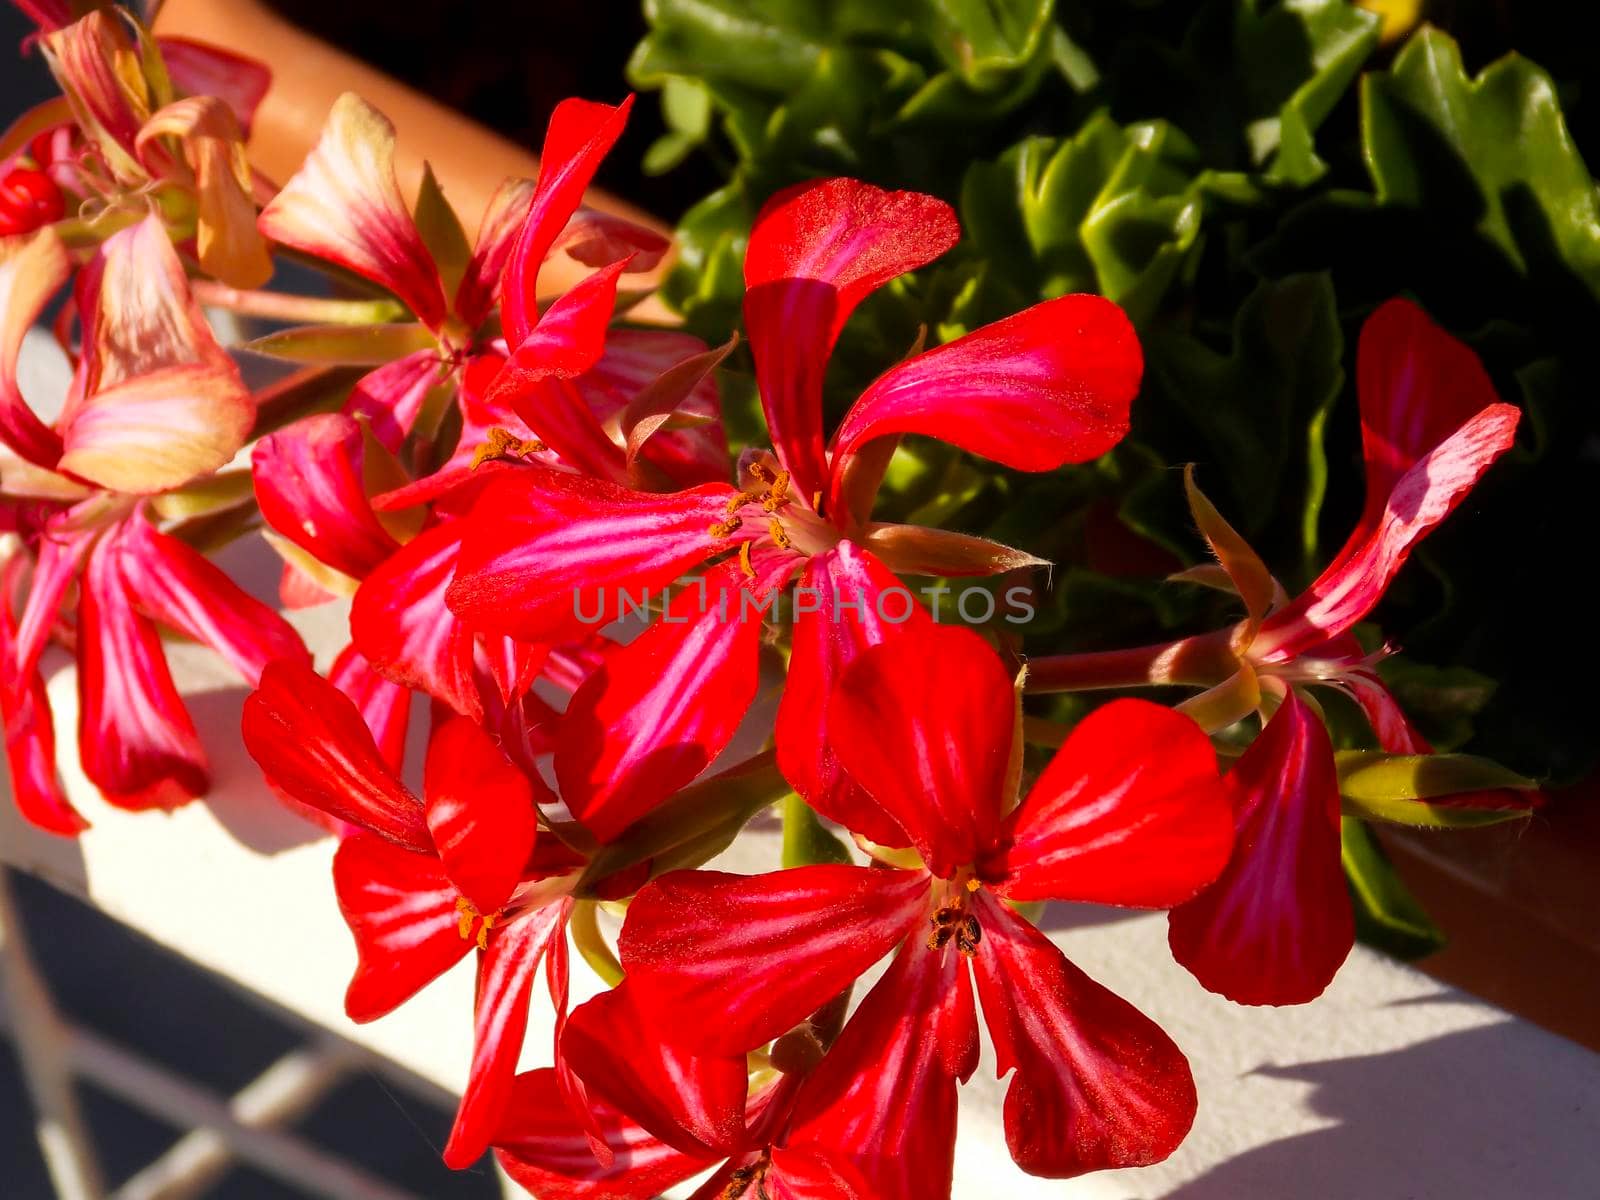 Red Ivyleaf Geranium Close Up by swissChard7